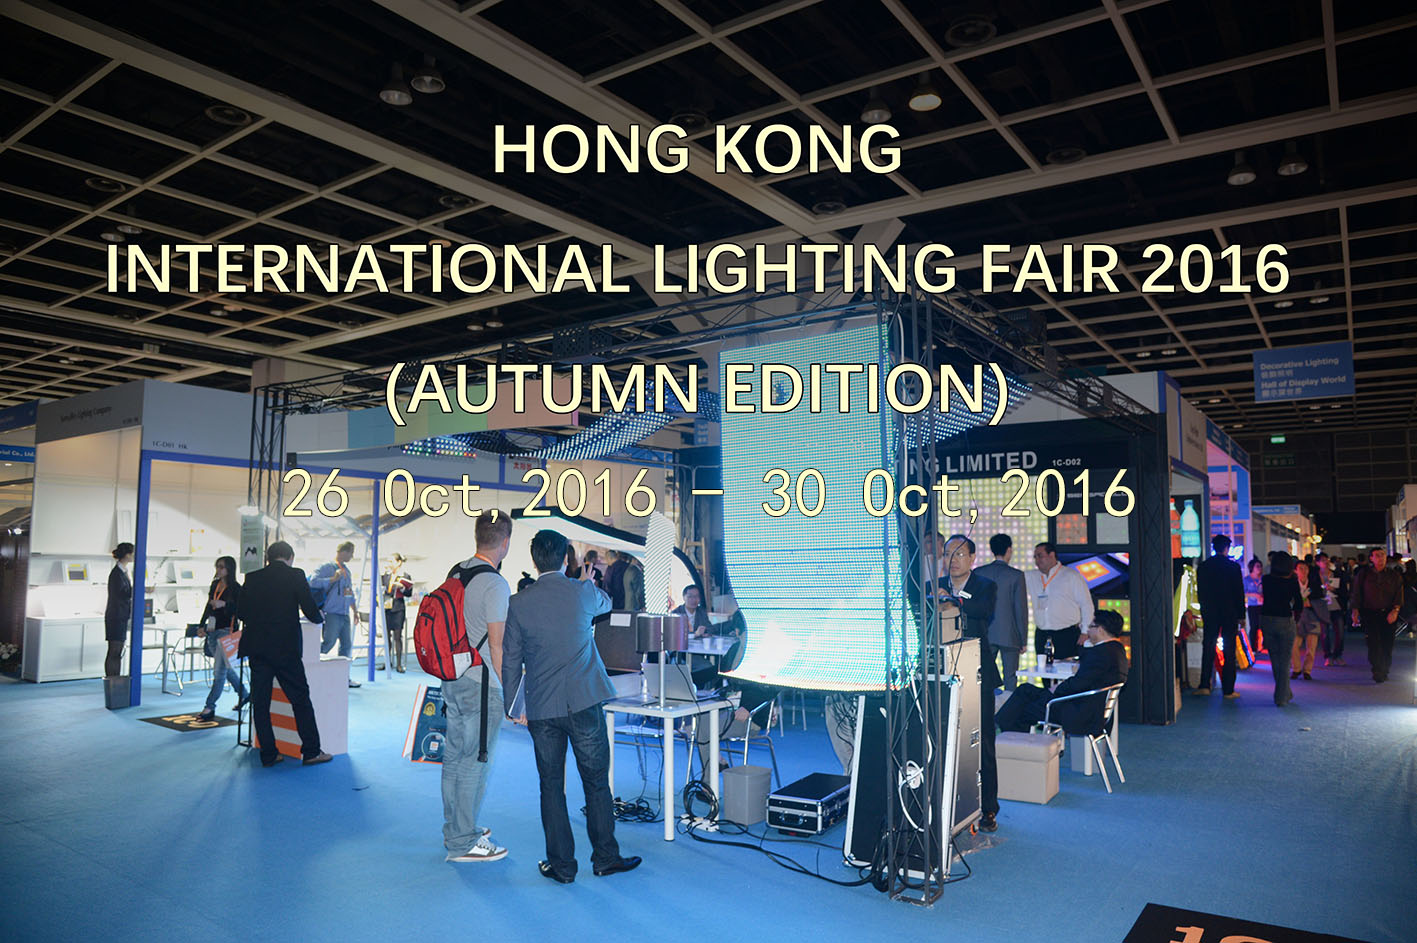 See you again at the 2016 Hong Kong Lighting Fair